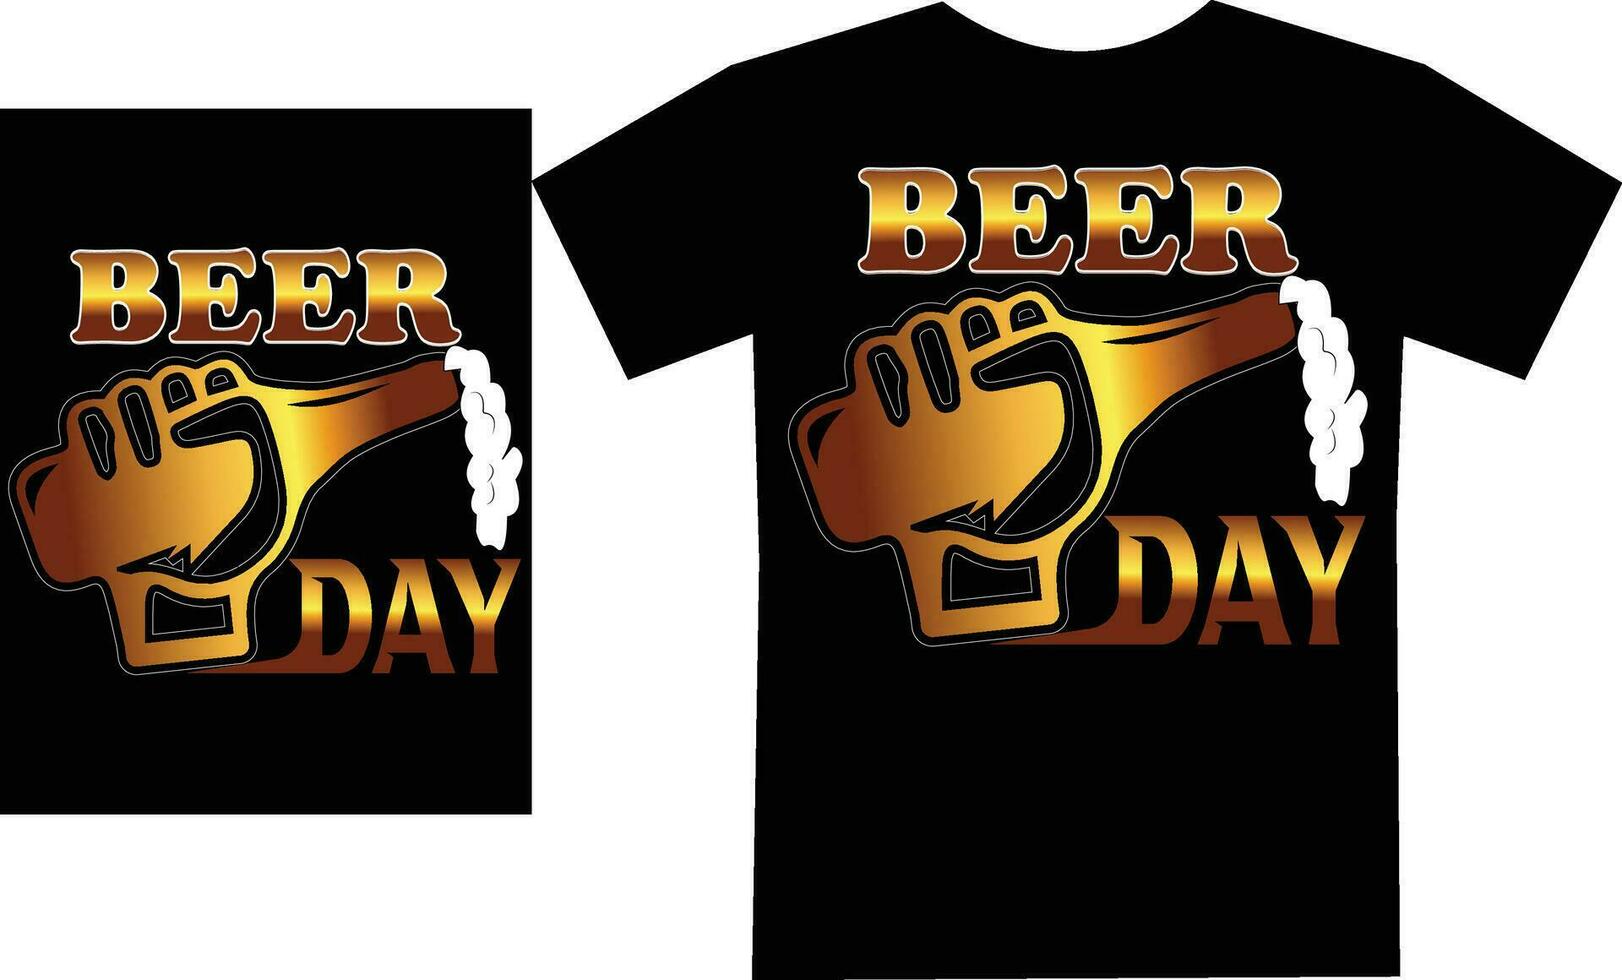 Internationale bier dag t- overhemd ontwerp vector het dossier.